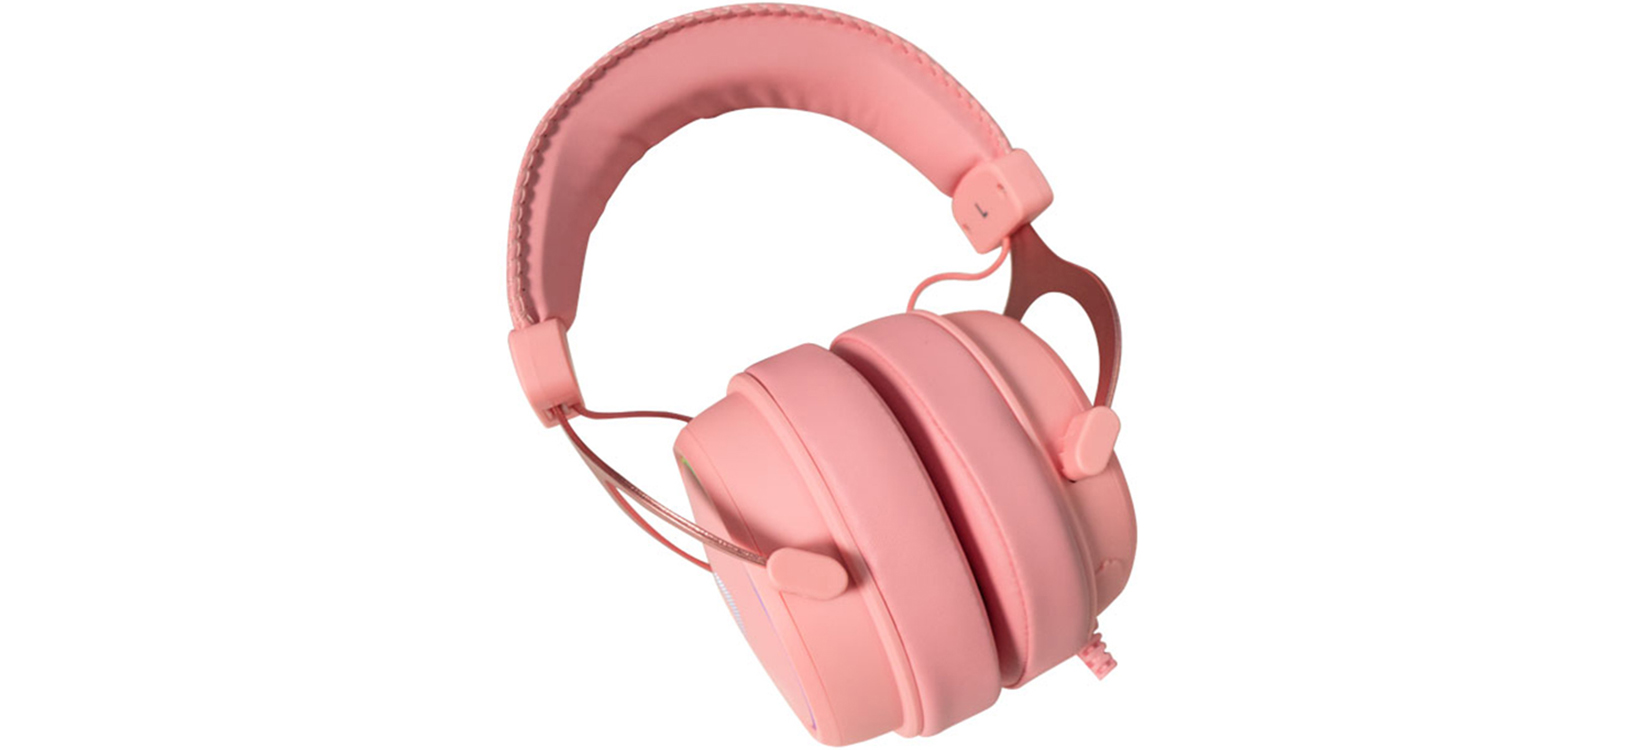 Tai nghe Dareu EH925S (USB, 7.1, Màu hồng, Led RGB)